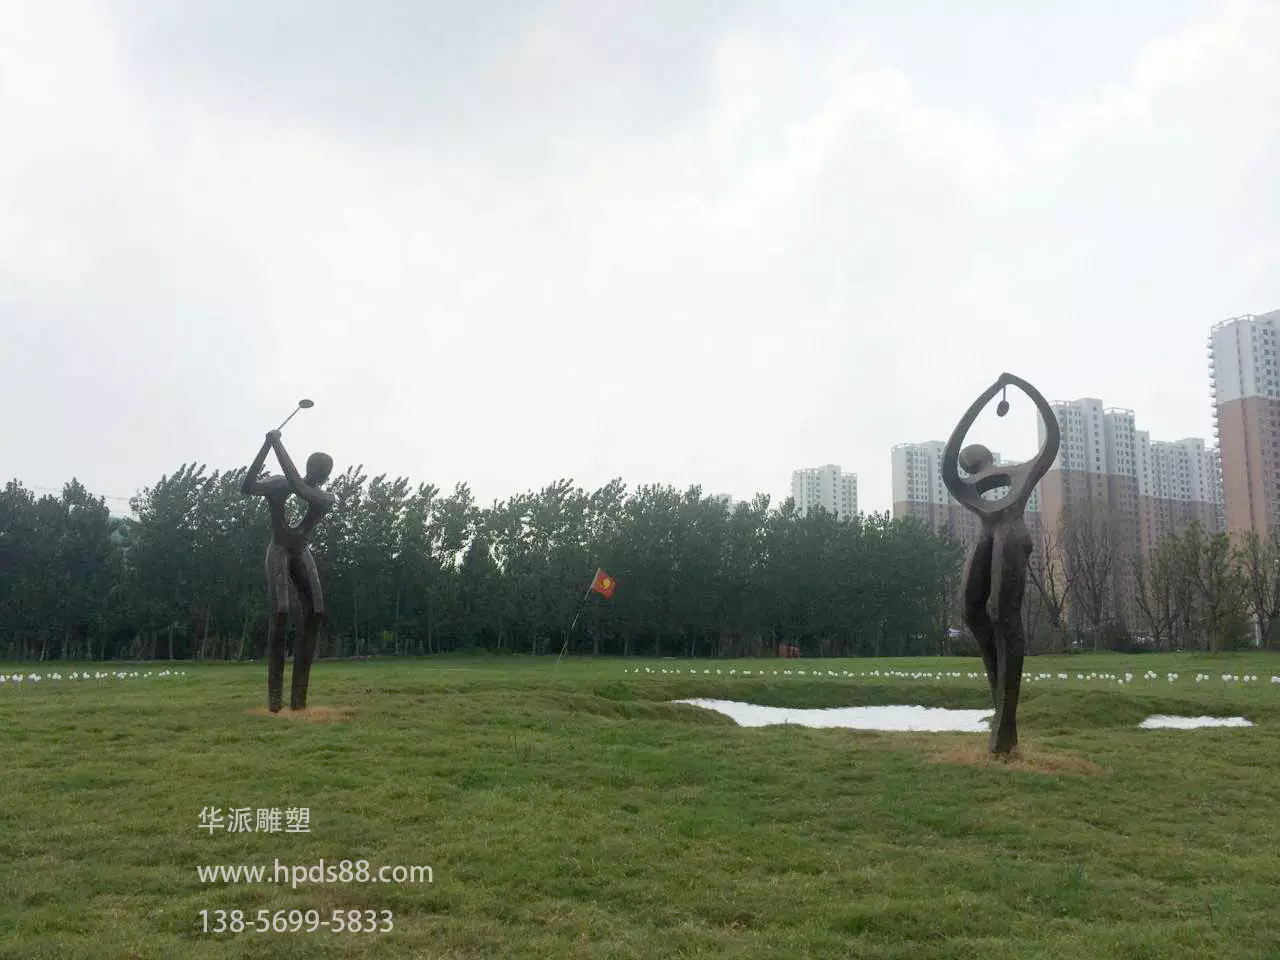 安徽华派雕塑制作合肥陶冲湖别院